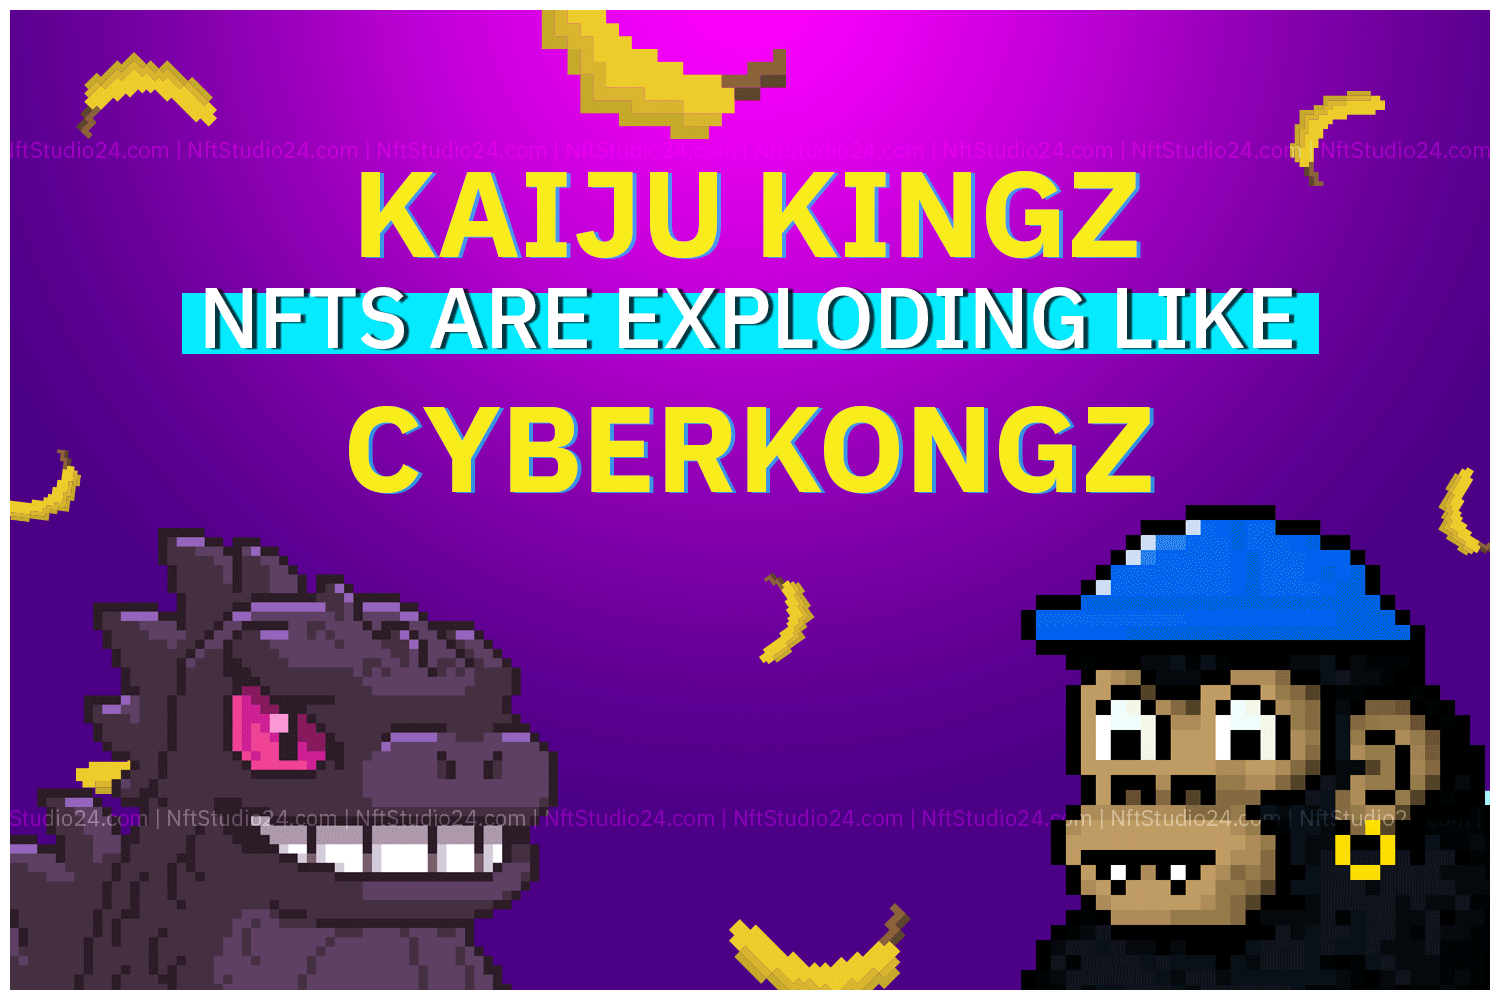 Kaiju kingz, cyberkongz